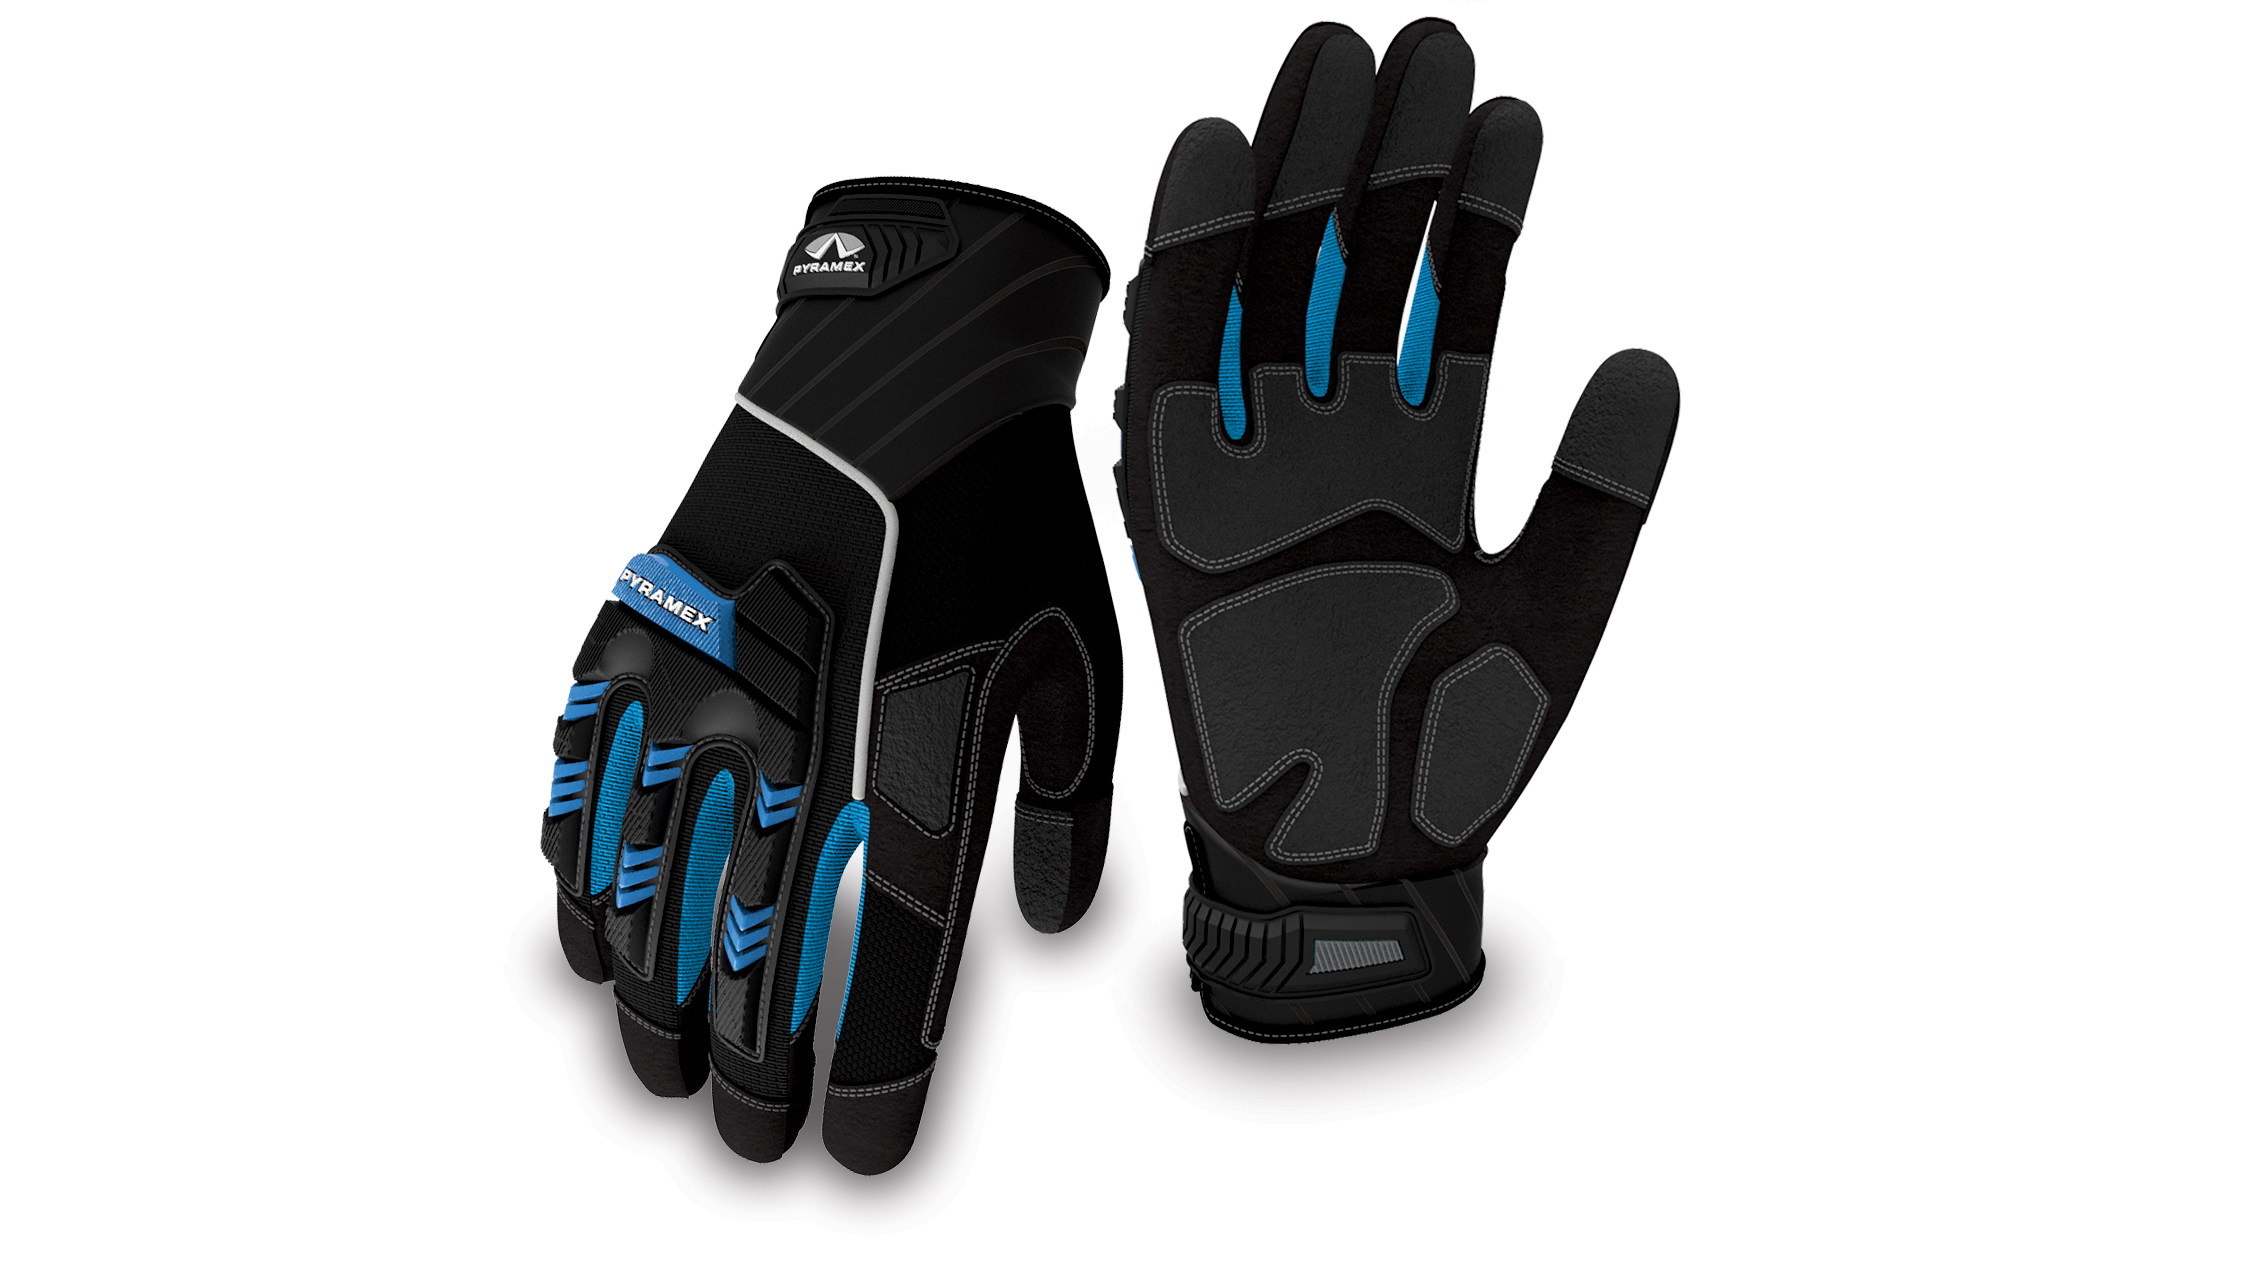 GL201 GL201 Series Gloves